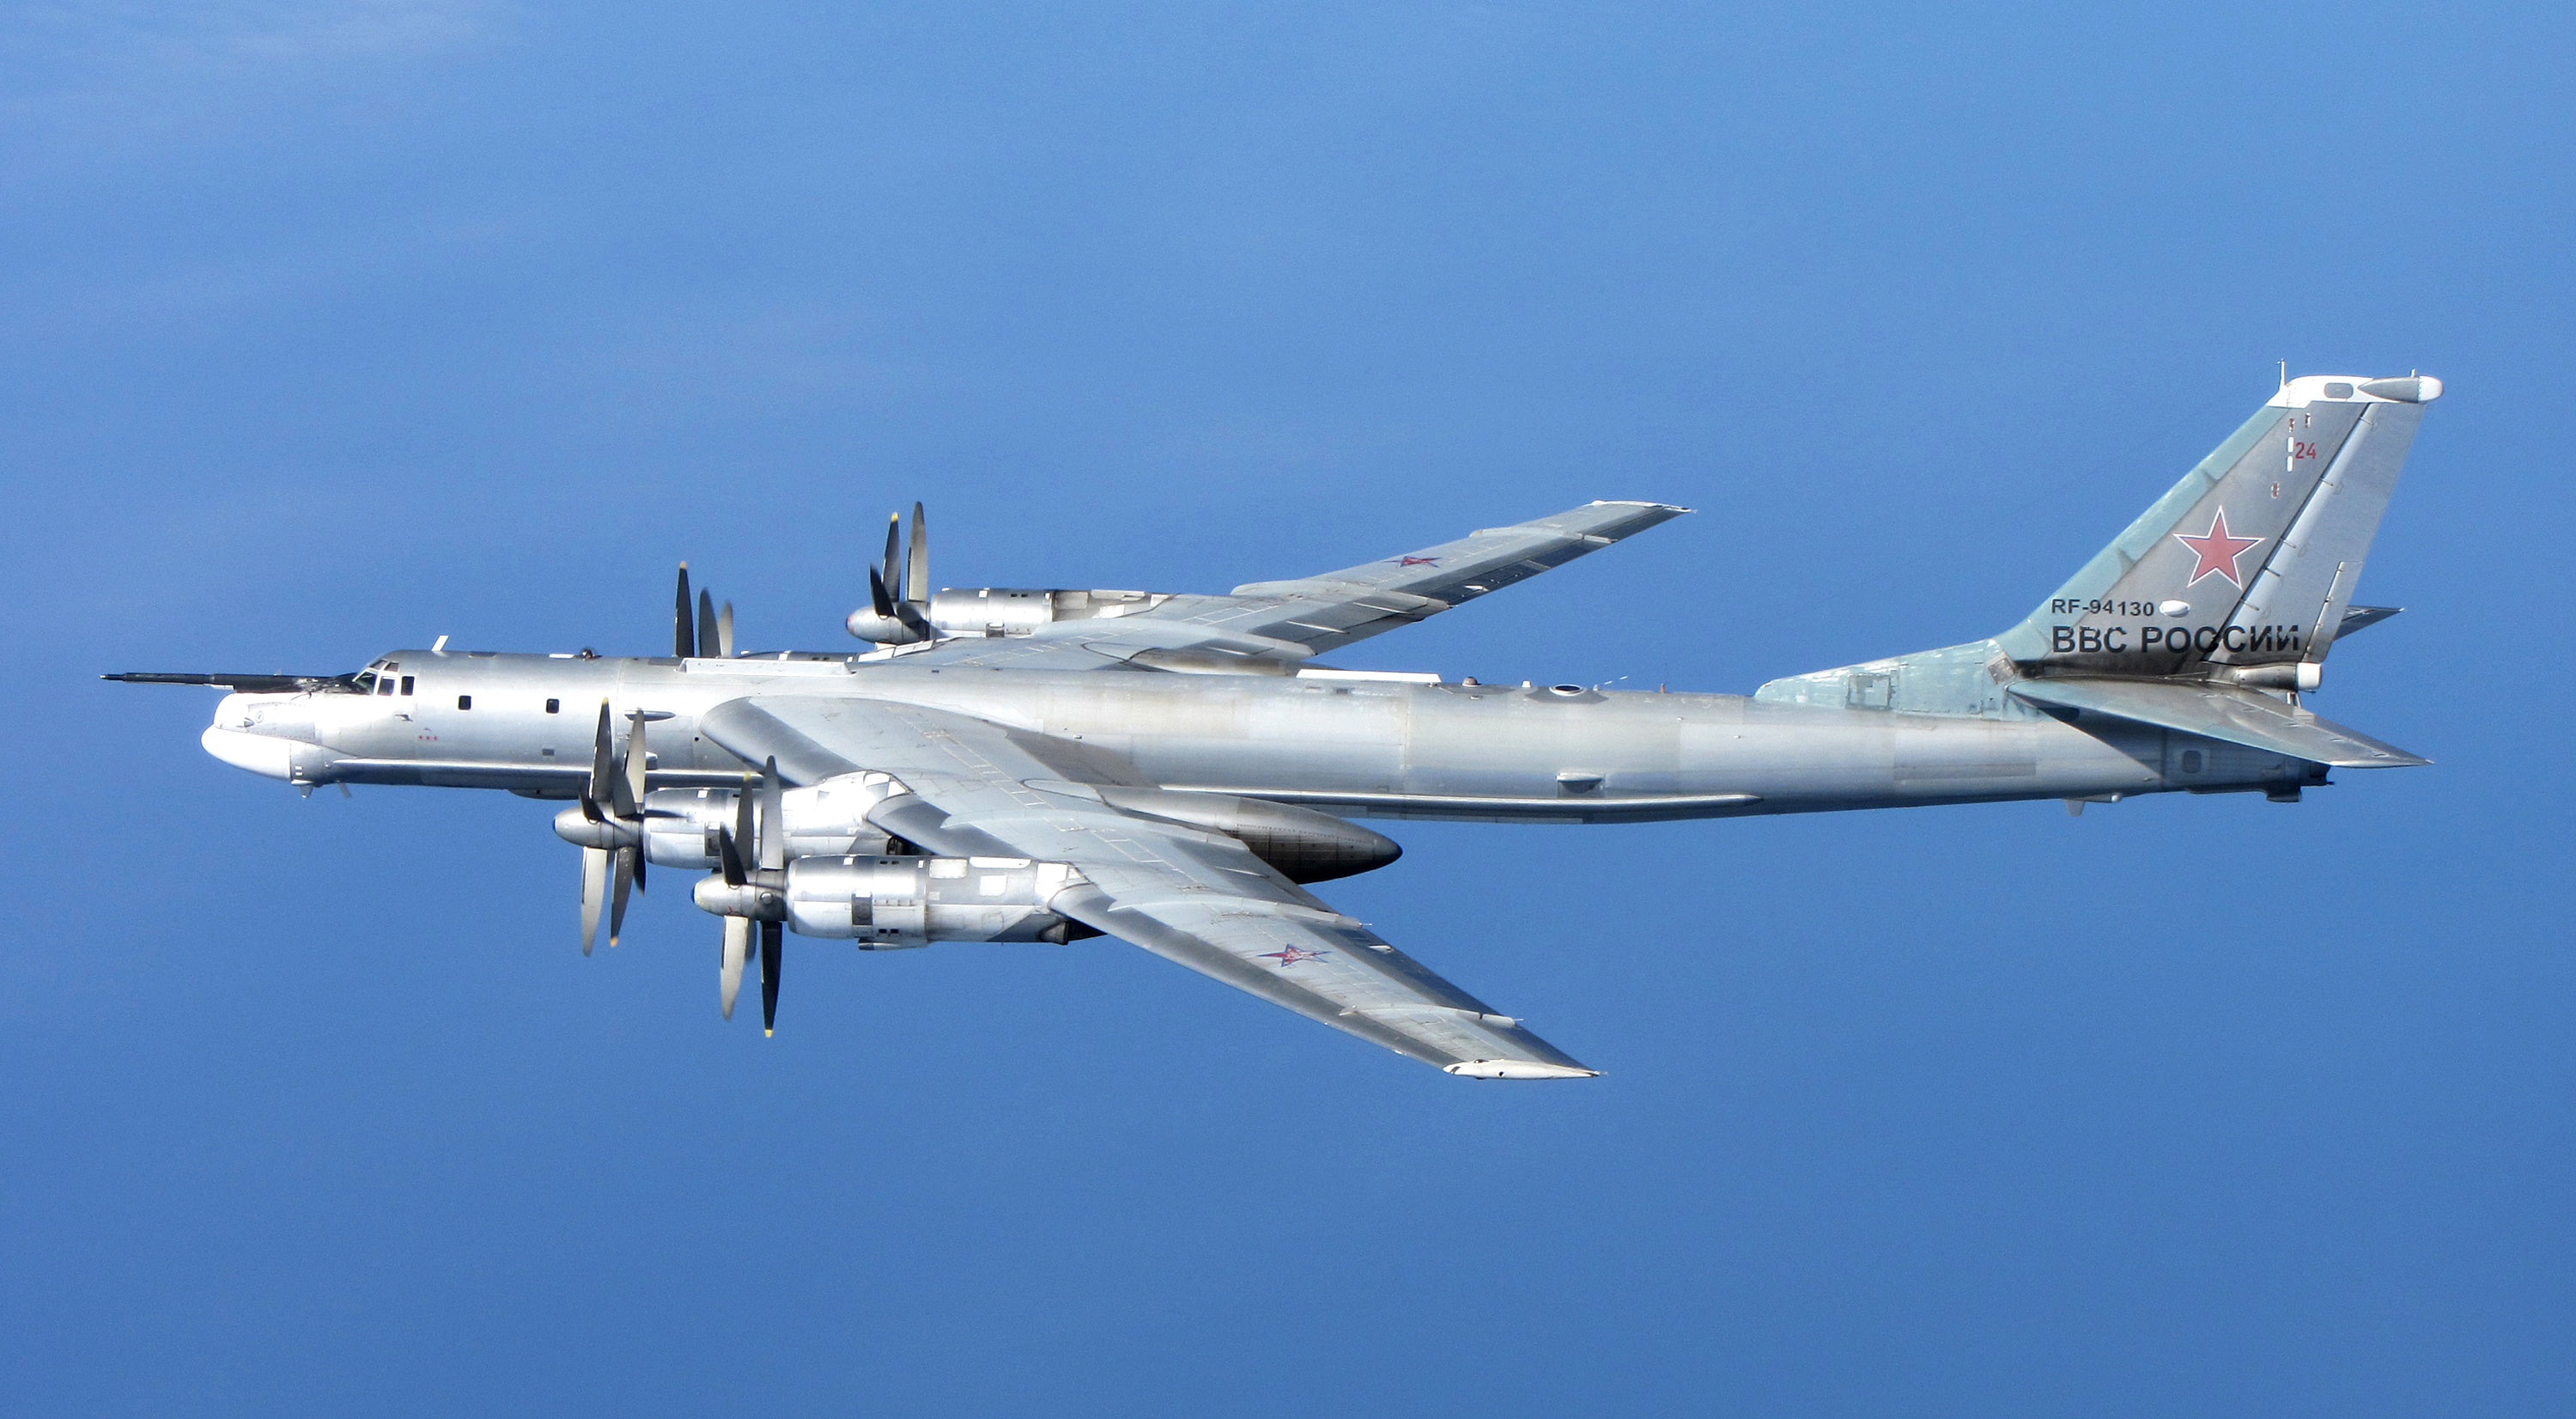 Rosyjskie myśliwce Su-30 i strategiczne lotniskowce Tu-95 zaatakowały południowokoreańską strefę identyfikacyjną obrony powietrznej